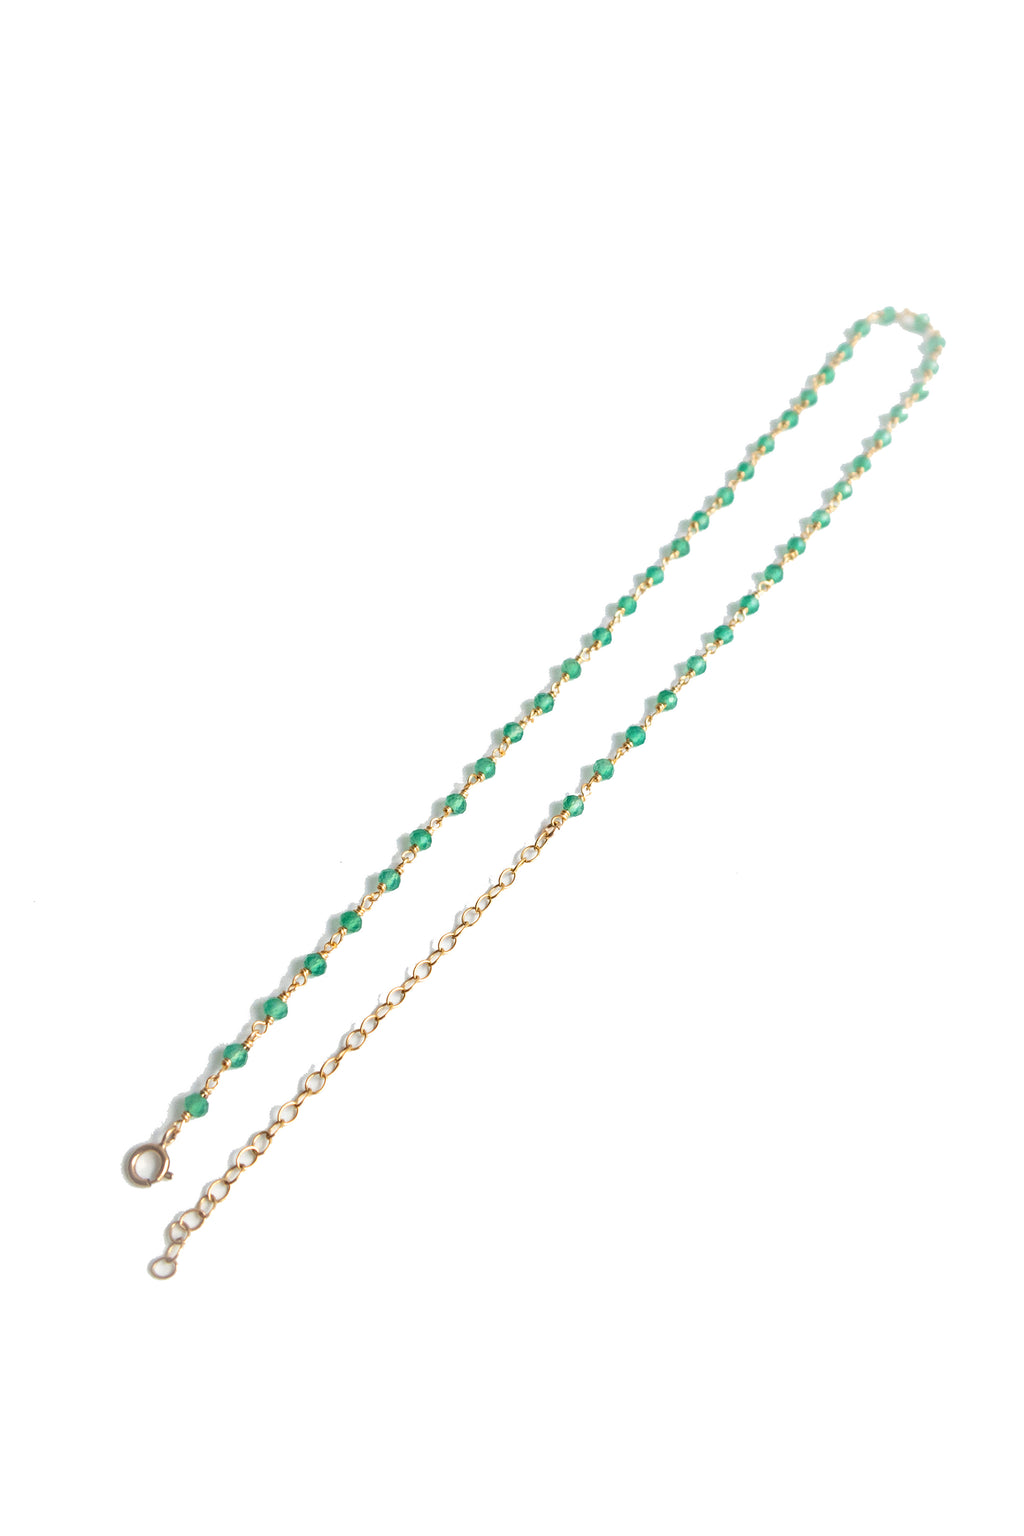 seree-hannah-skinny-chocker-necklace-with-small-green-jade-stone-bead